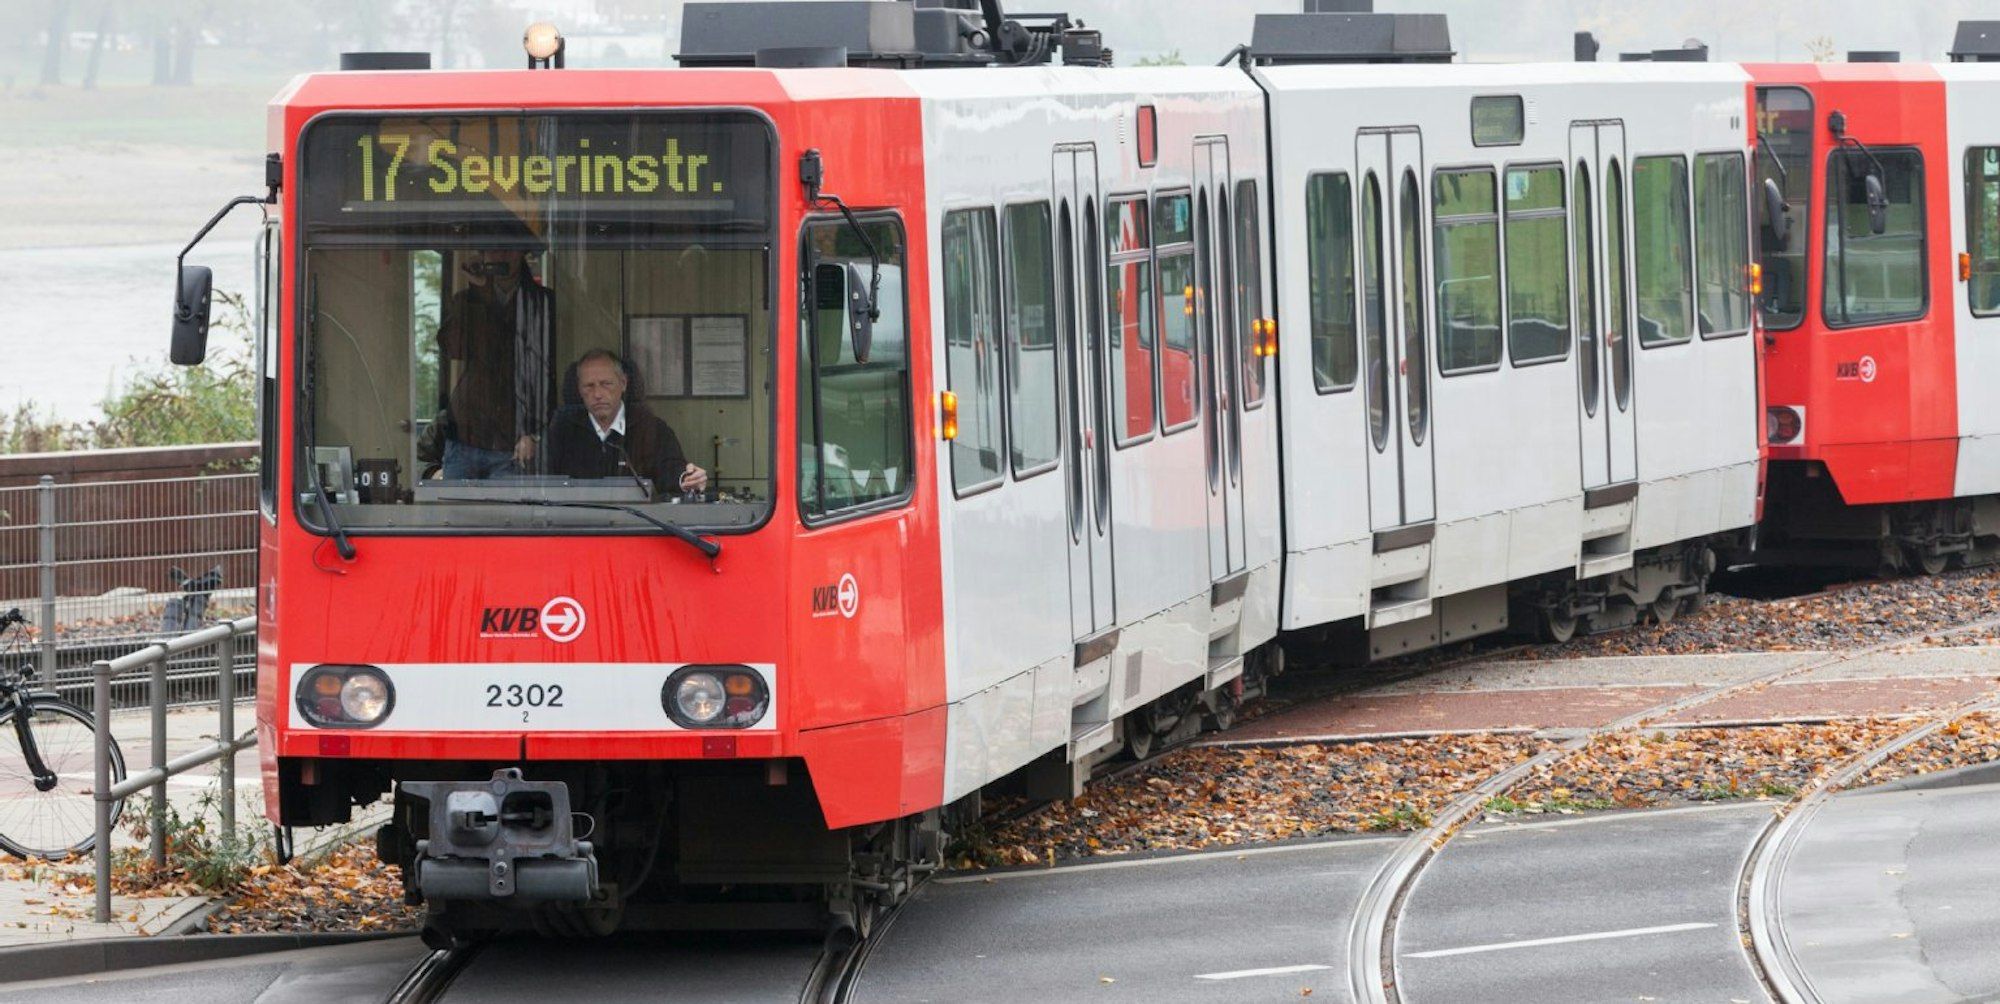 Die neue KVB-Linie 17.